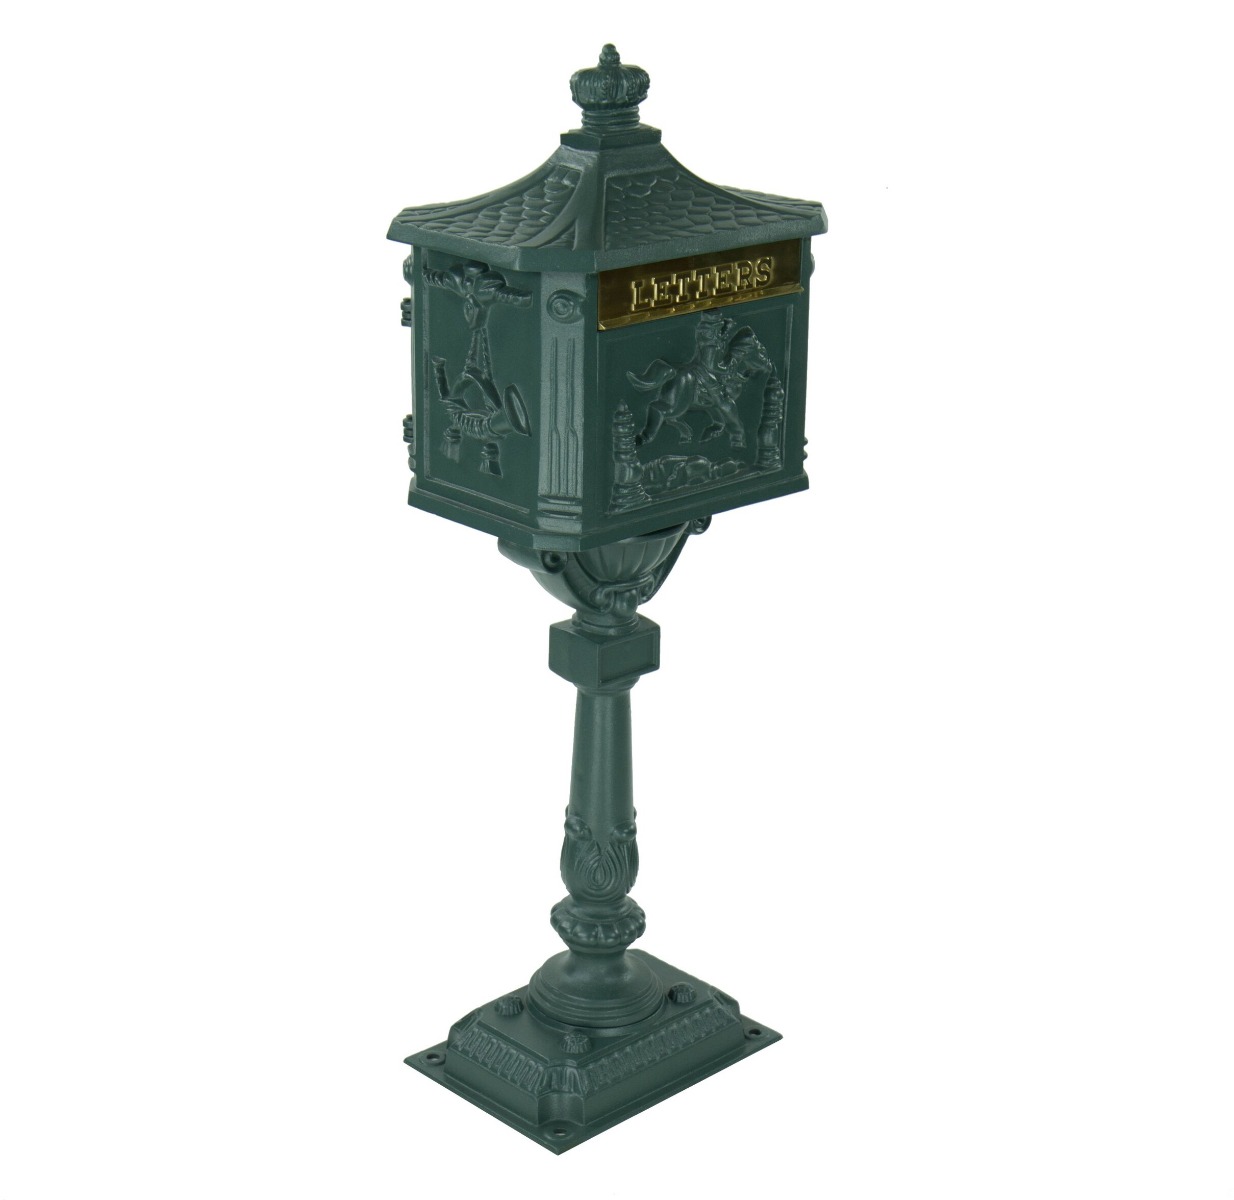 Amco Victorian Pedestal Locking Mailbox in Textured Bronze